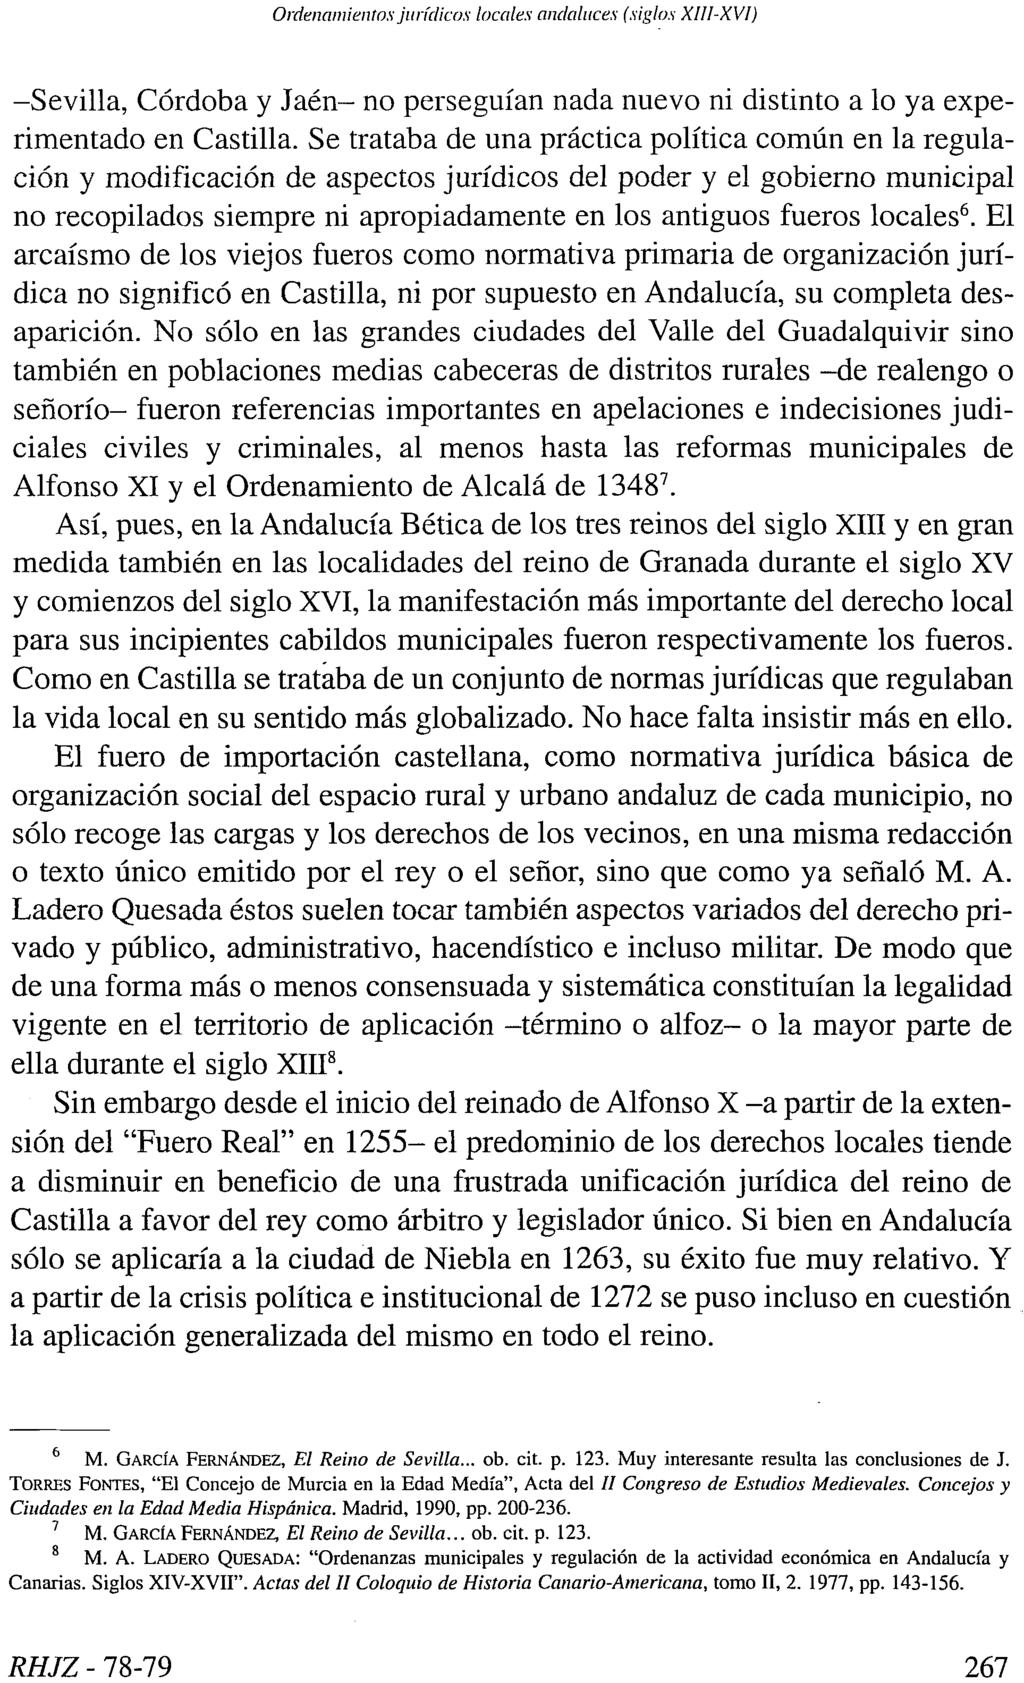 Ordenamientos jurídicos locales andaluces (siglos XIII-XVI) -Sevilla, Córdoba y Jaén- no perseguían nada nuevo ni distinto a lo ya experimentado en Castilla.